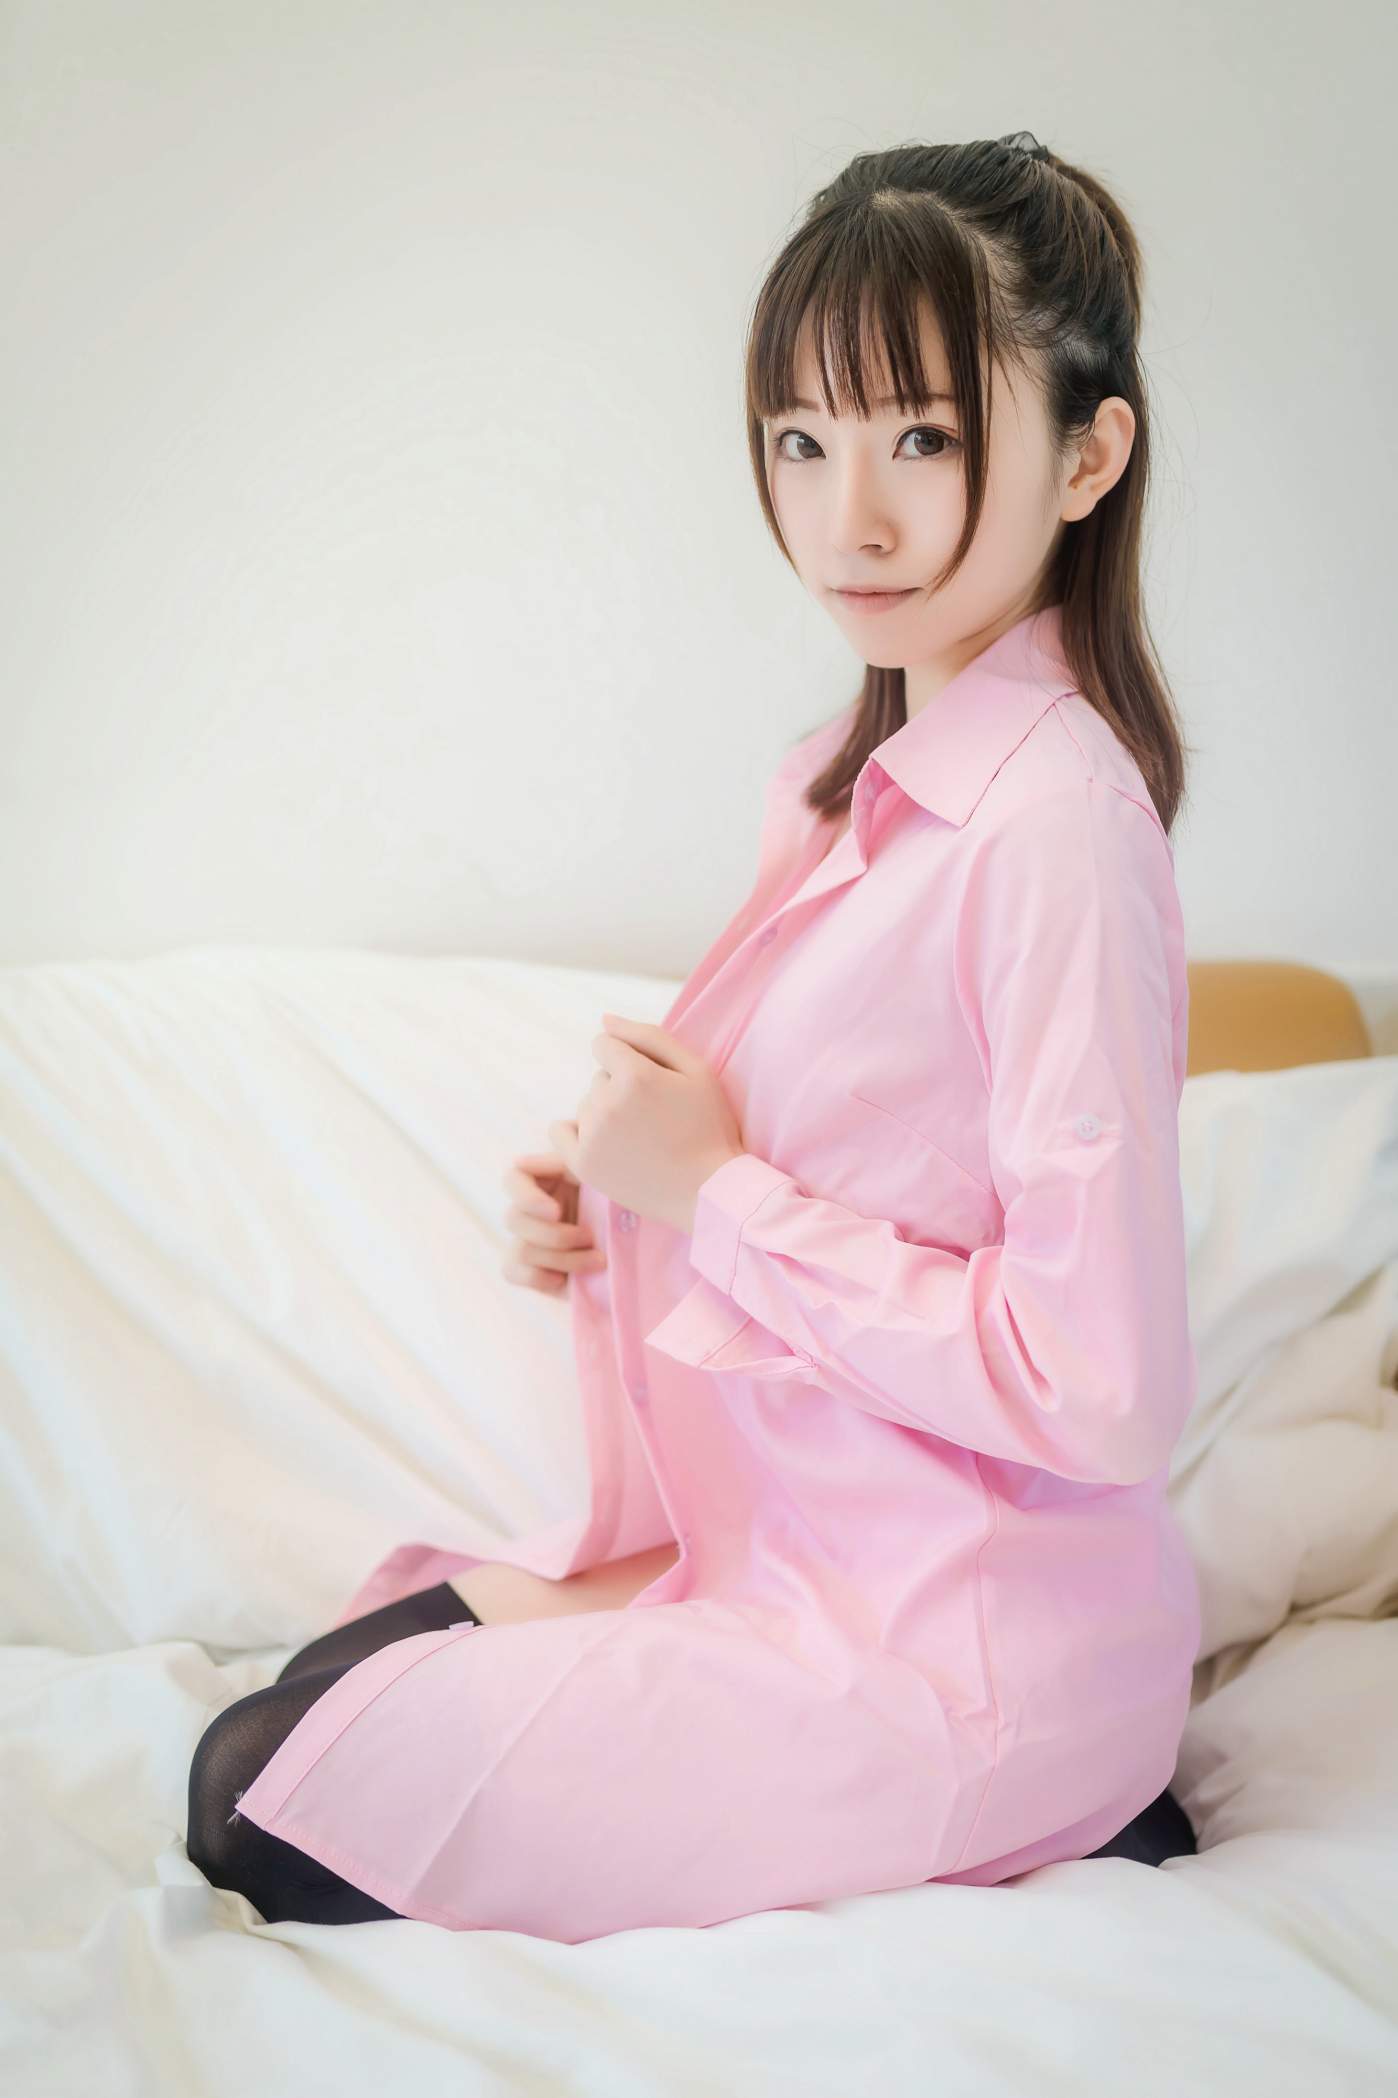 绮太郎 Kitaro   粉色衬衫 [38P 120.9M]-图屋屋